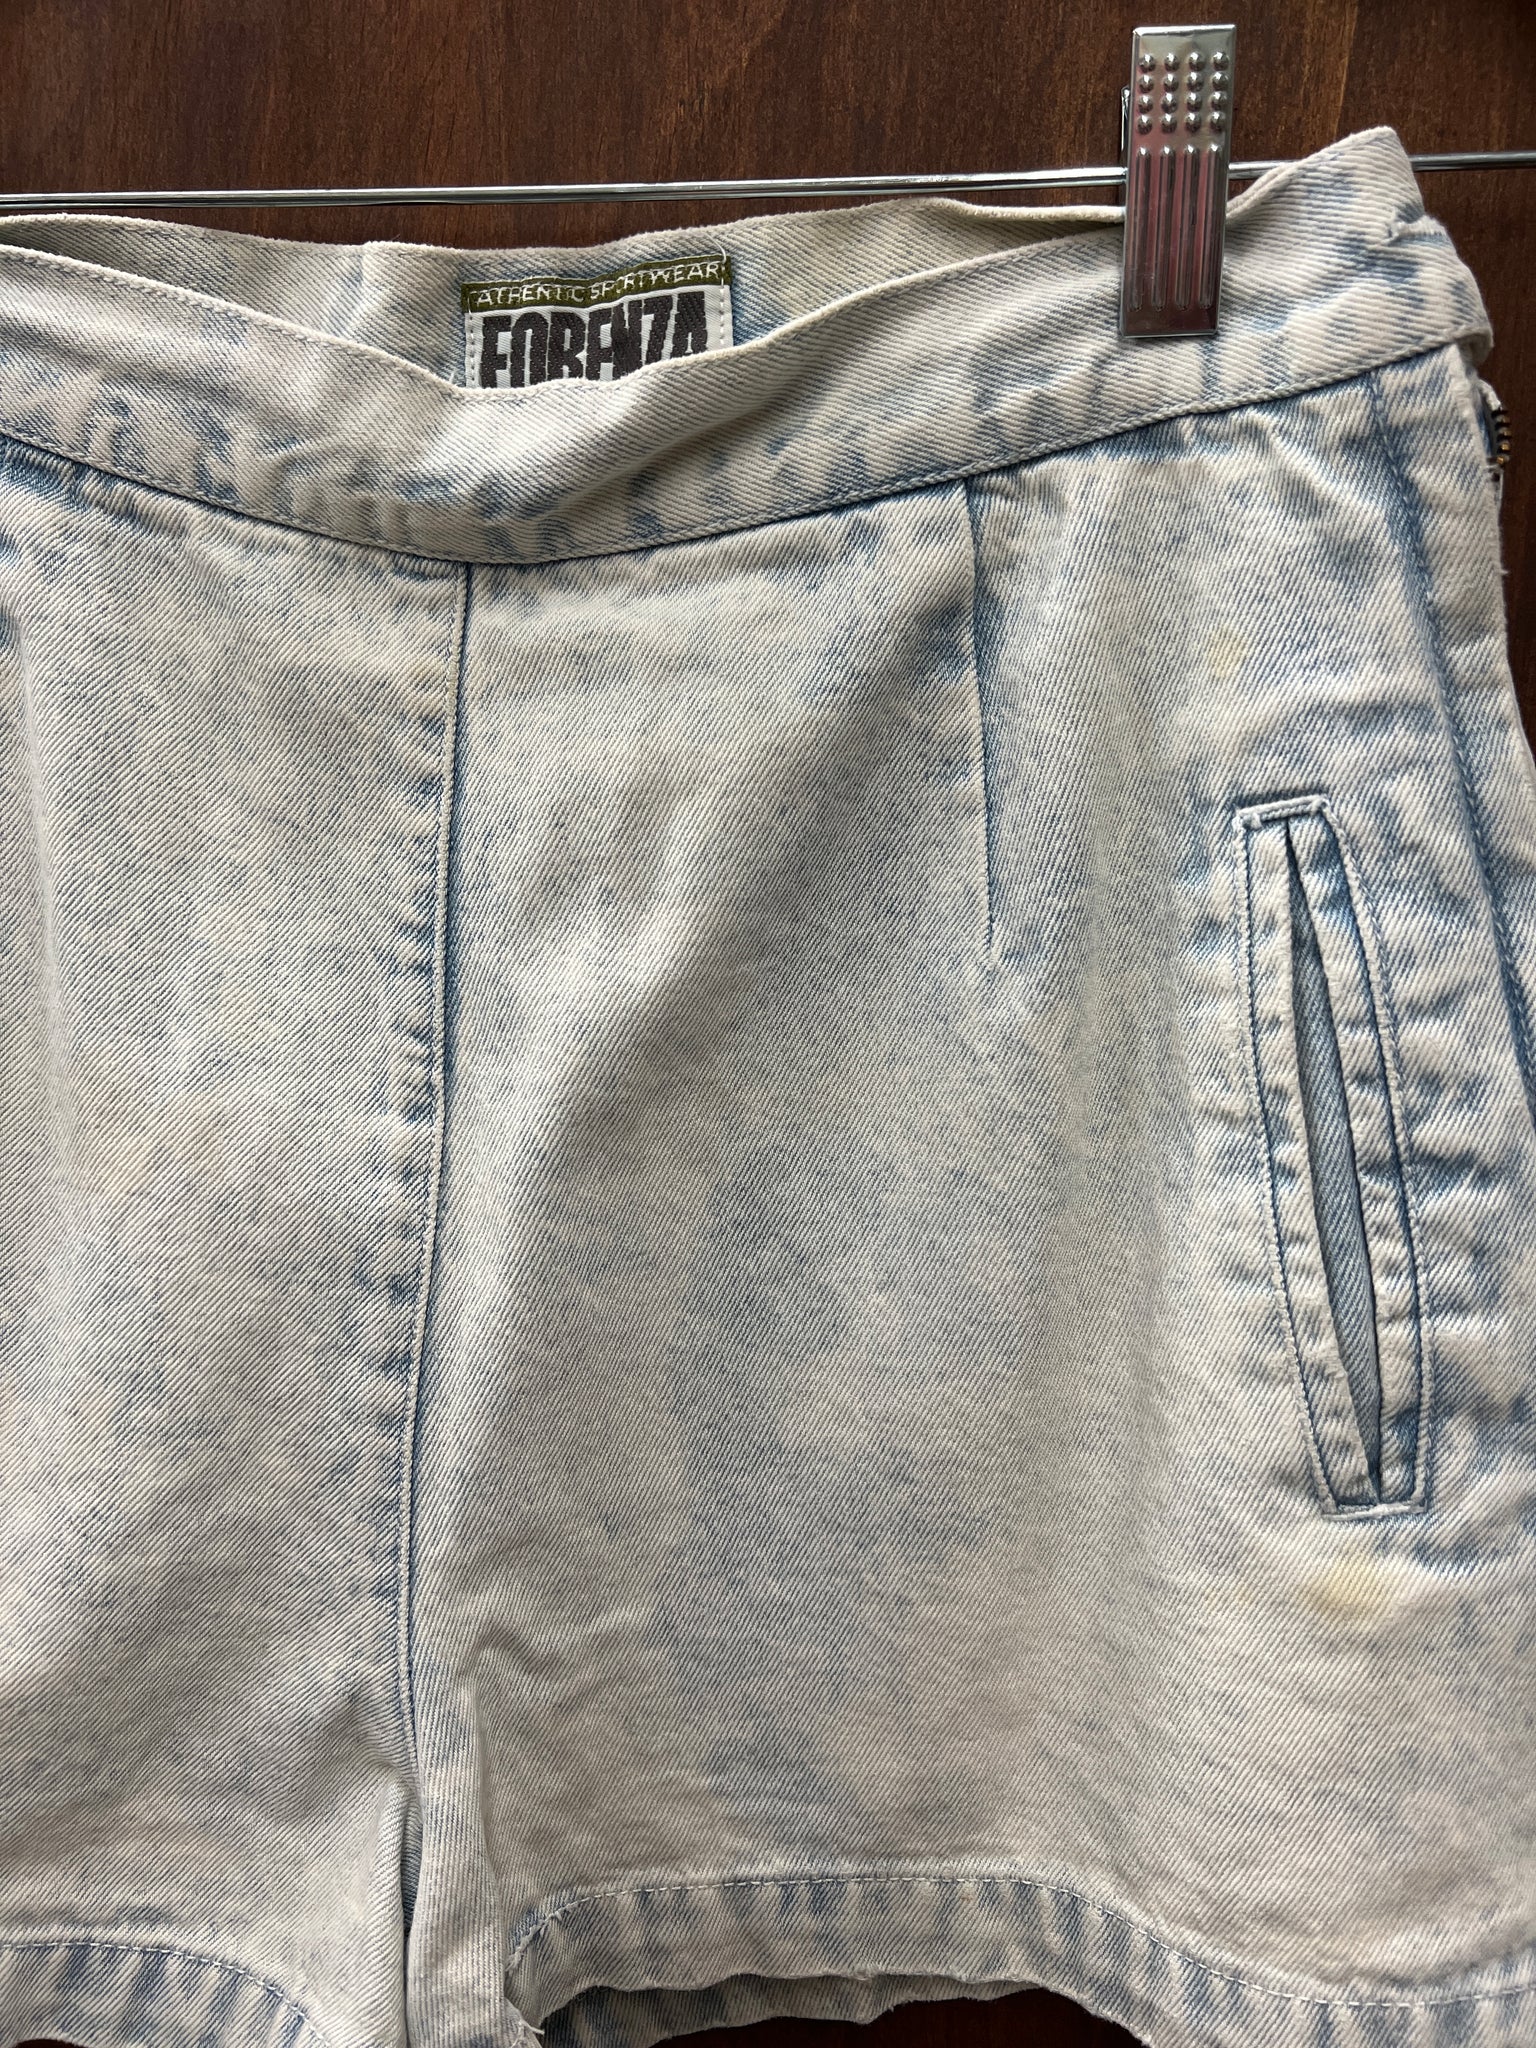 1990s SHORTS- Forenza acid wash short shorts